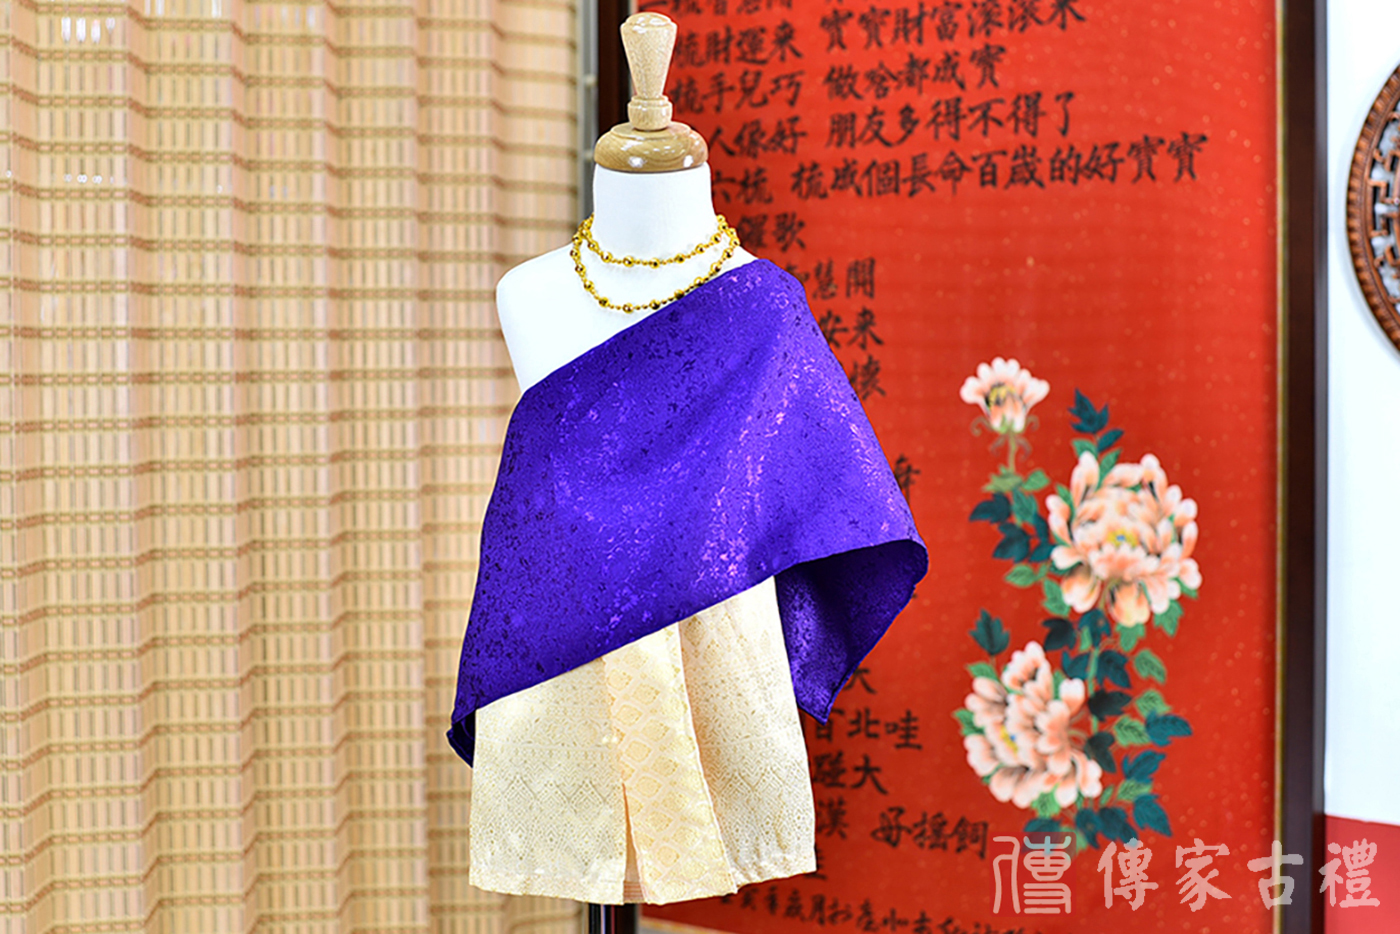 2024-02-22小孩皇室泰服古裝禮服照。深紫色披肩和金色繞身裙的泰式古裝禮服。照片集